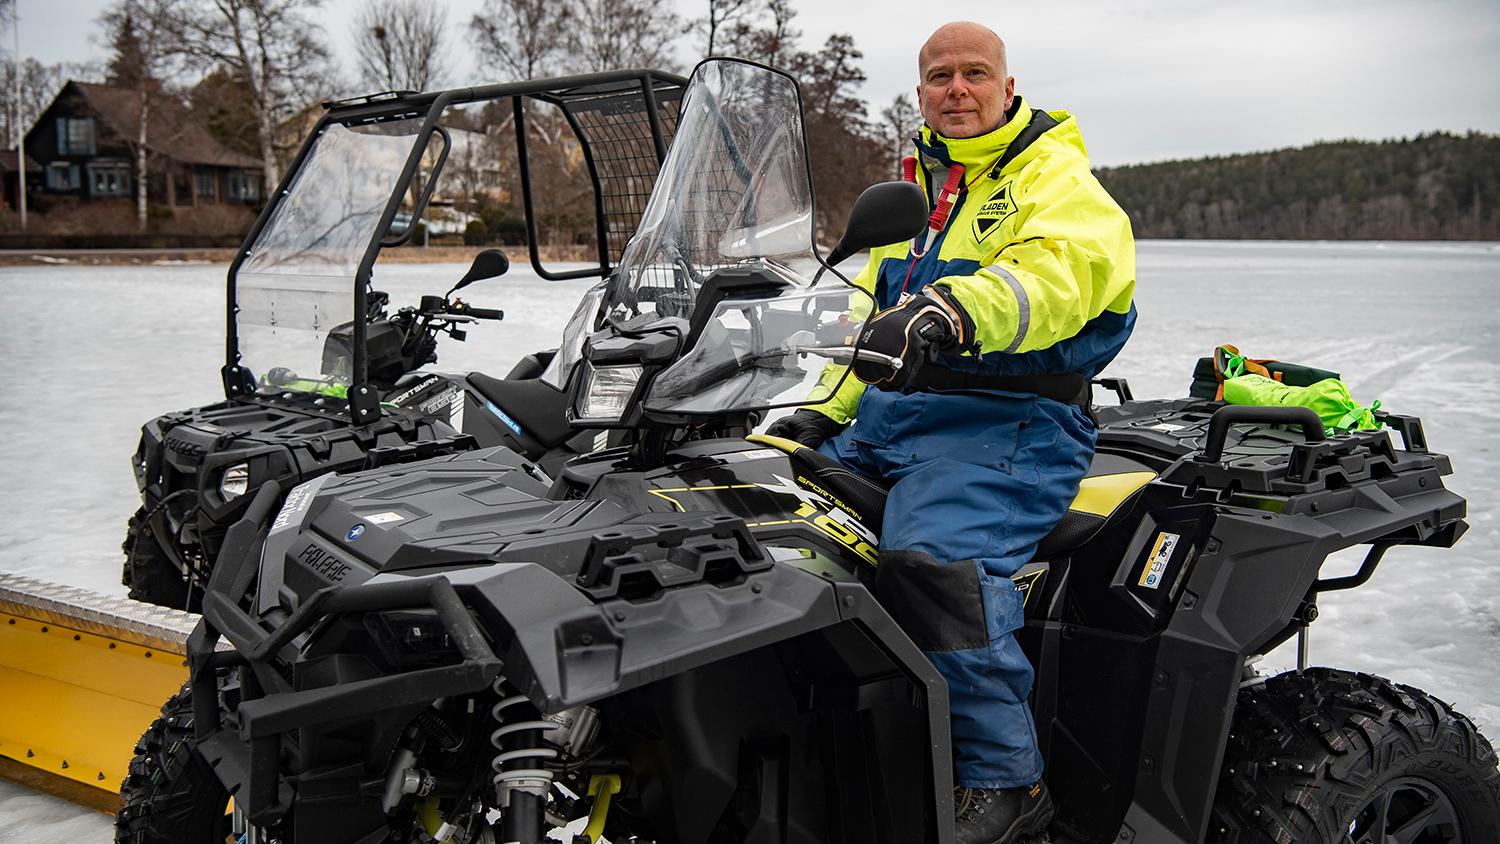 Anders Dahl har plogat isen i Norrviken i drygt 20 år. Nyligen räddade han ett liv när han jobbade.